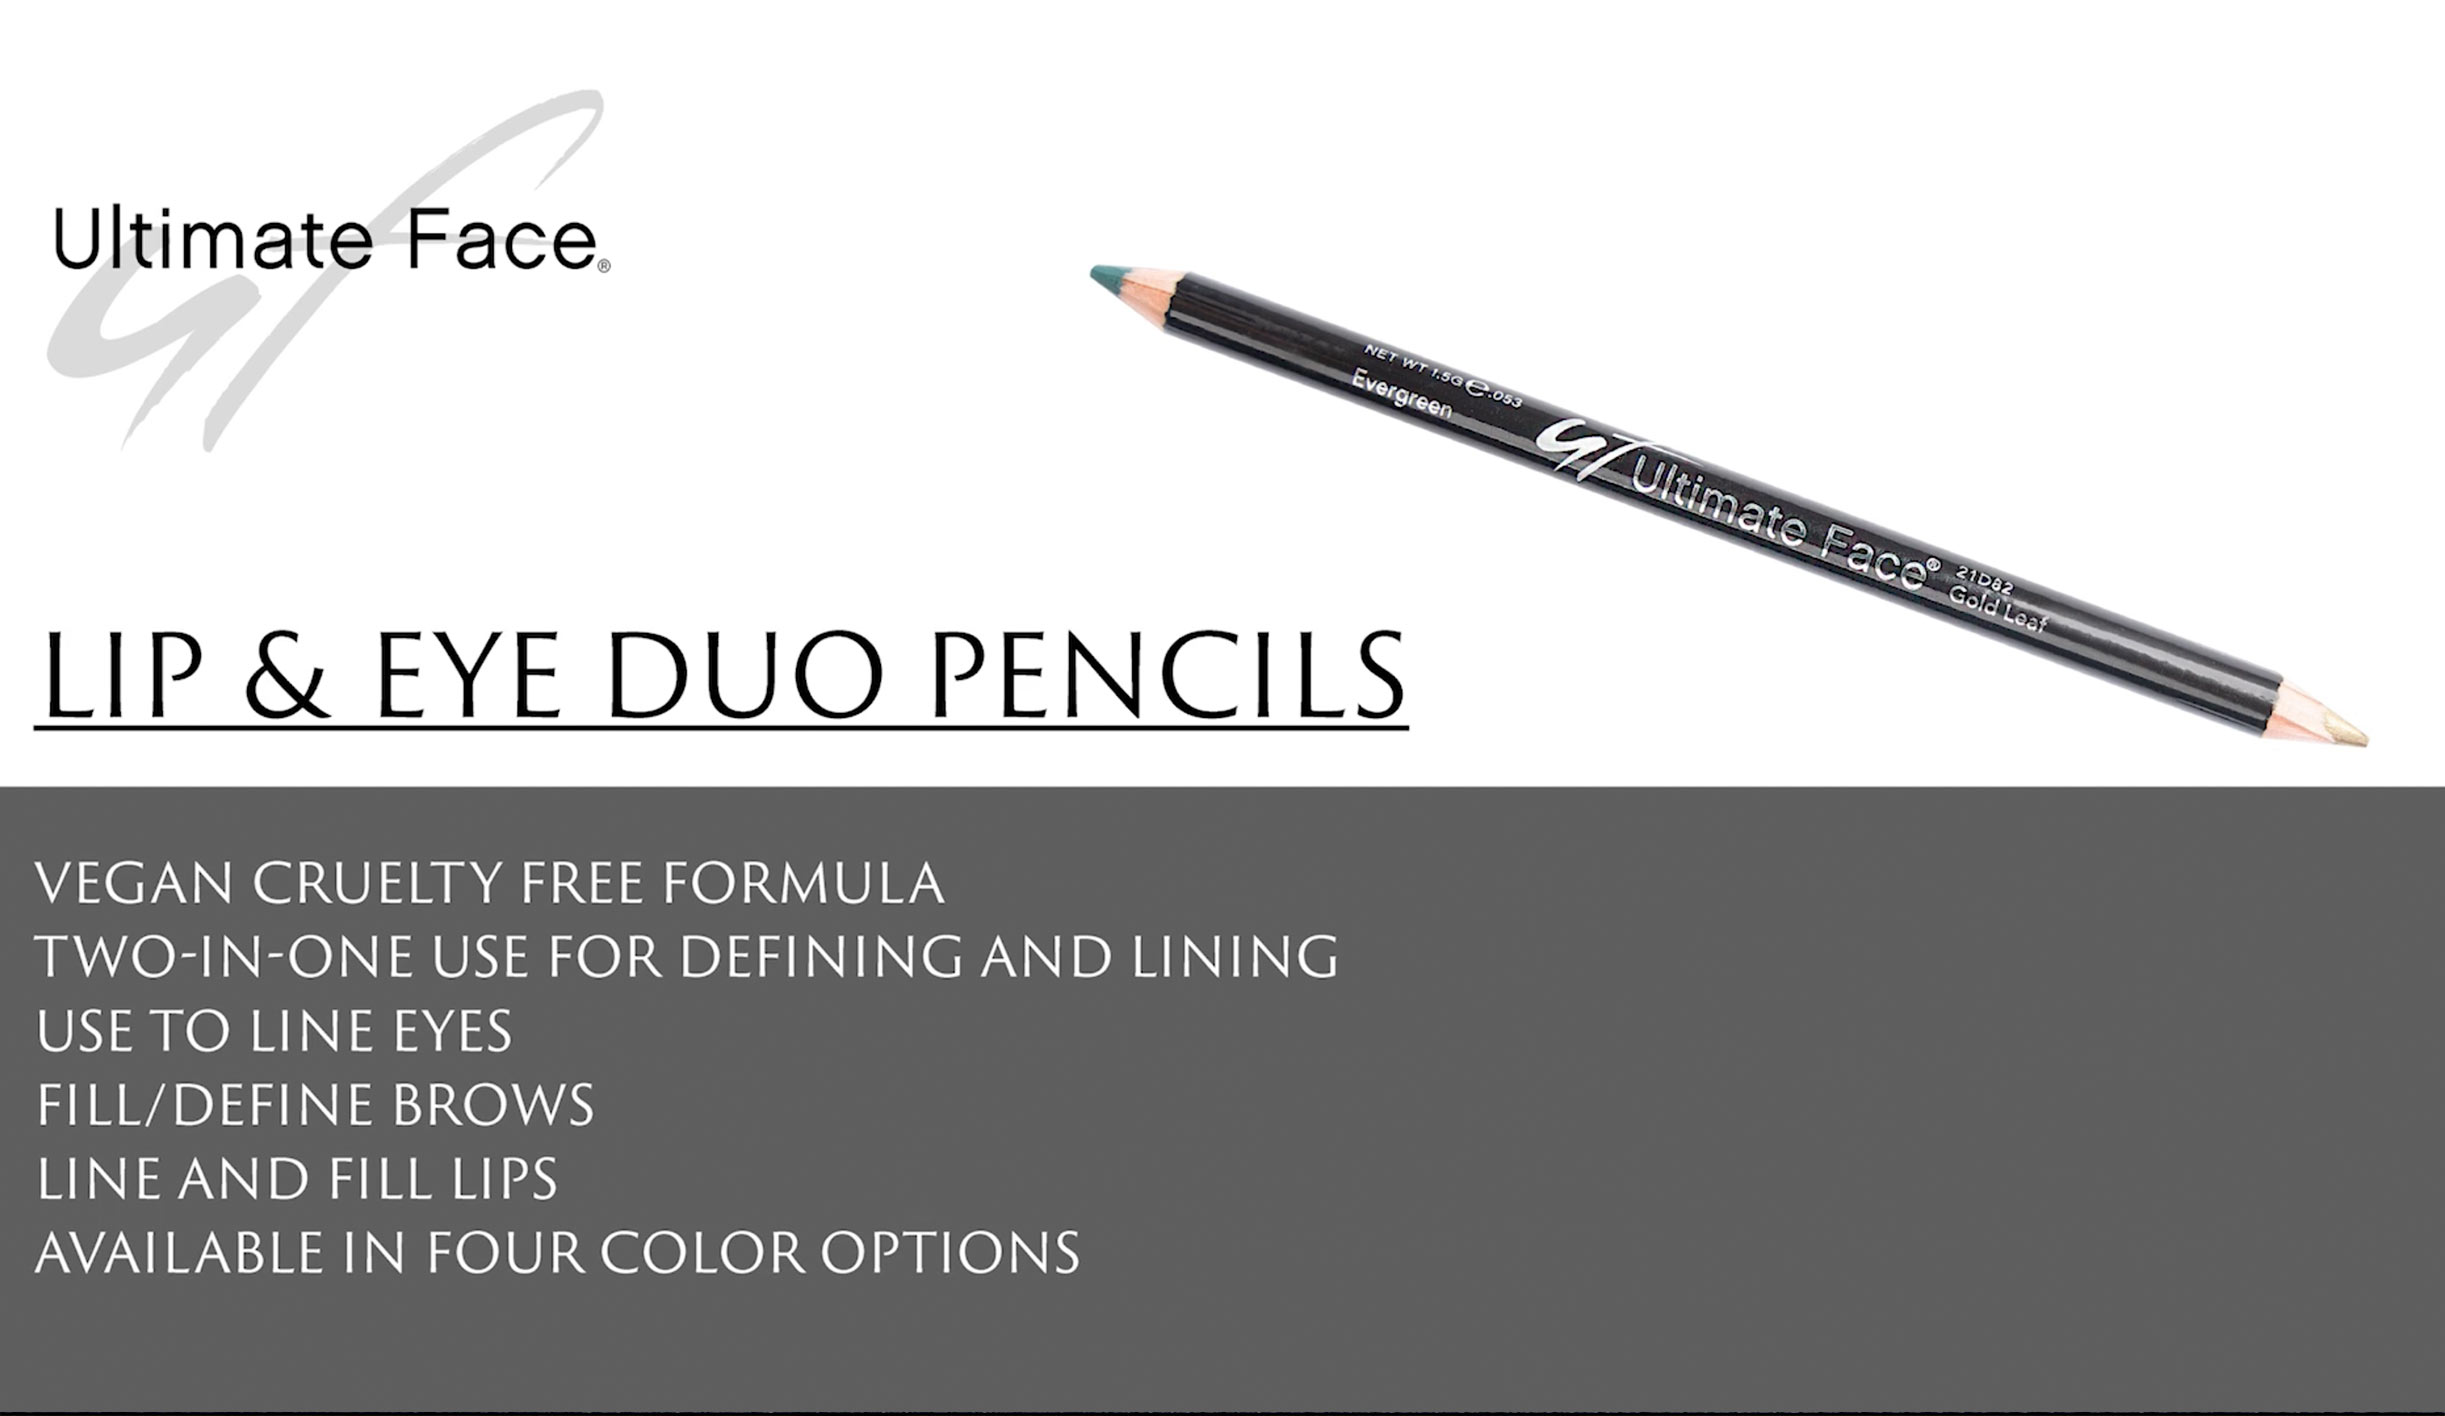 Ultimate Face Duo Pencils